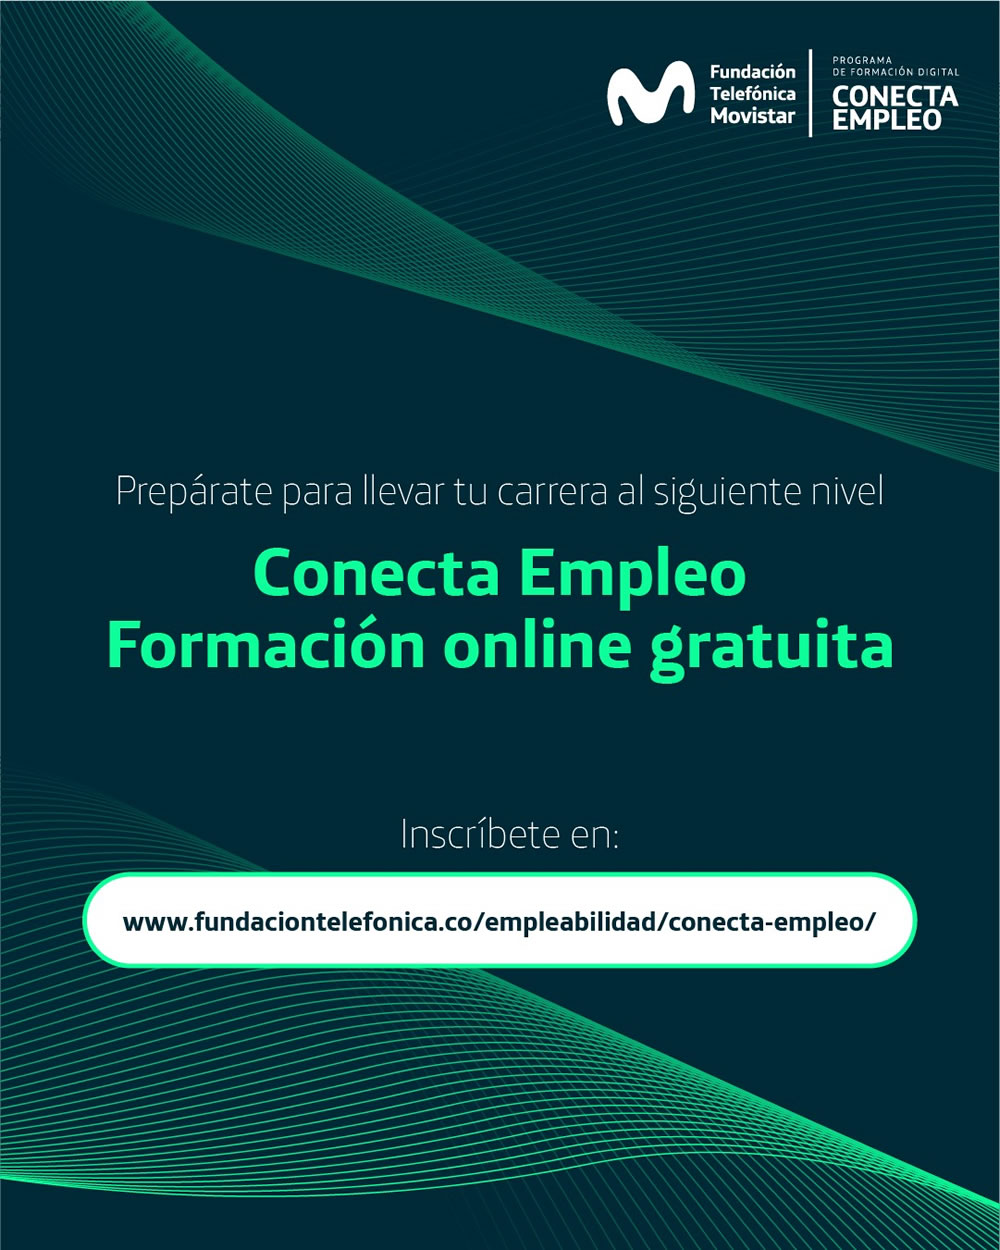 Fundación Telefónica Movistar ofrece 21 cursos gratuitos para habilidades digitales 